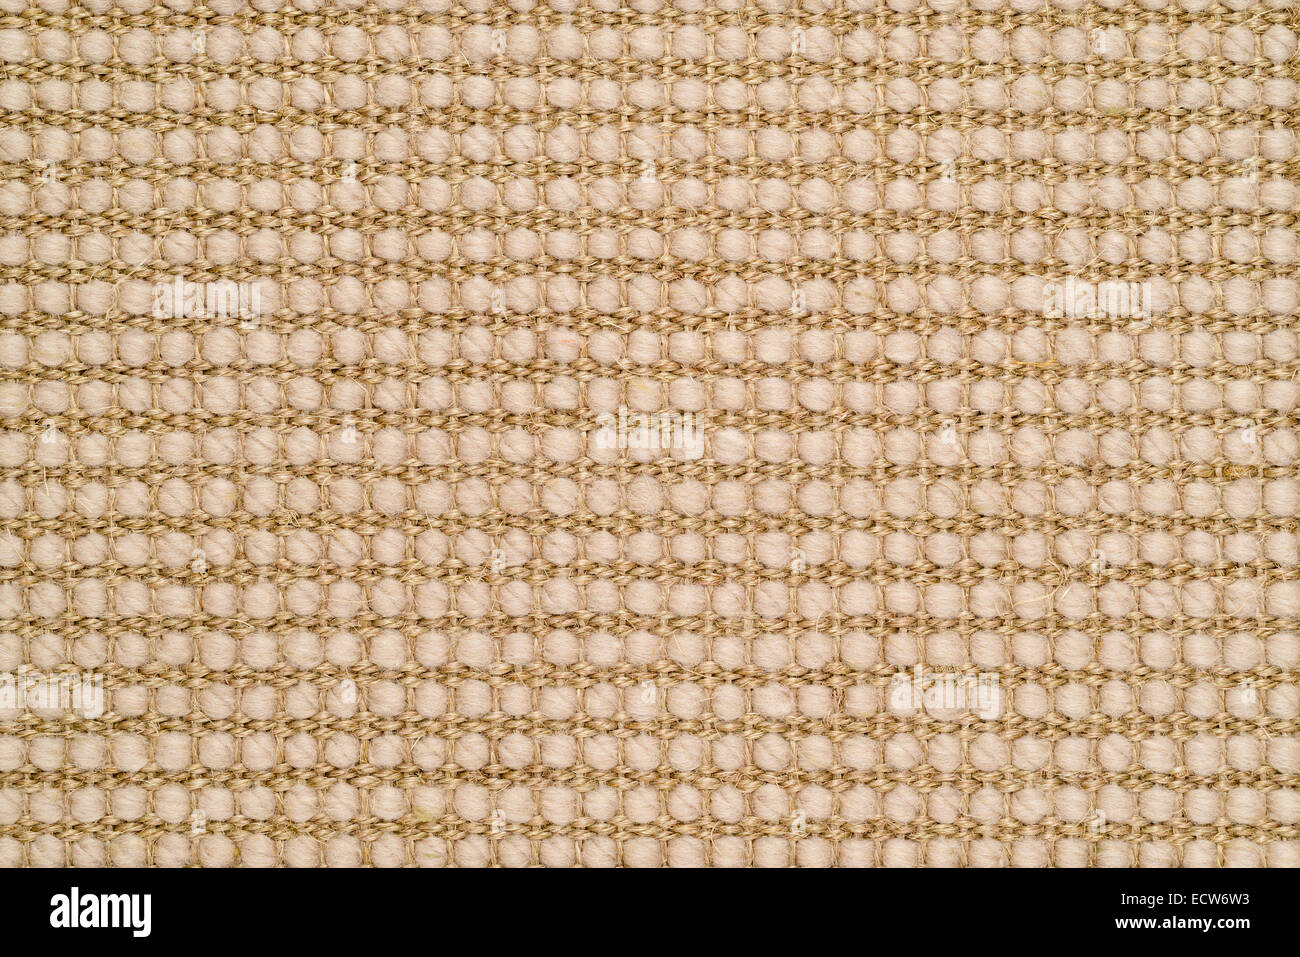 Gewebte Sisal & Wolle texturierte Wolldecke Hintergrund Stockfoto